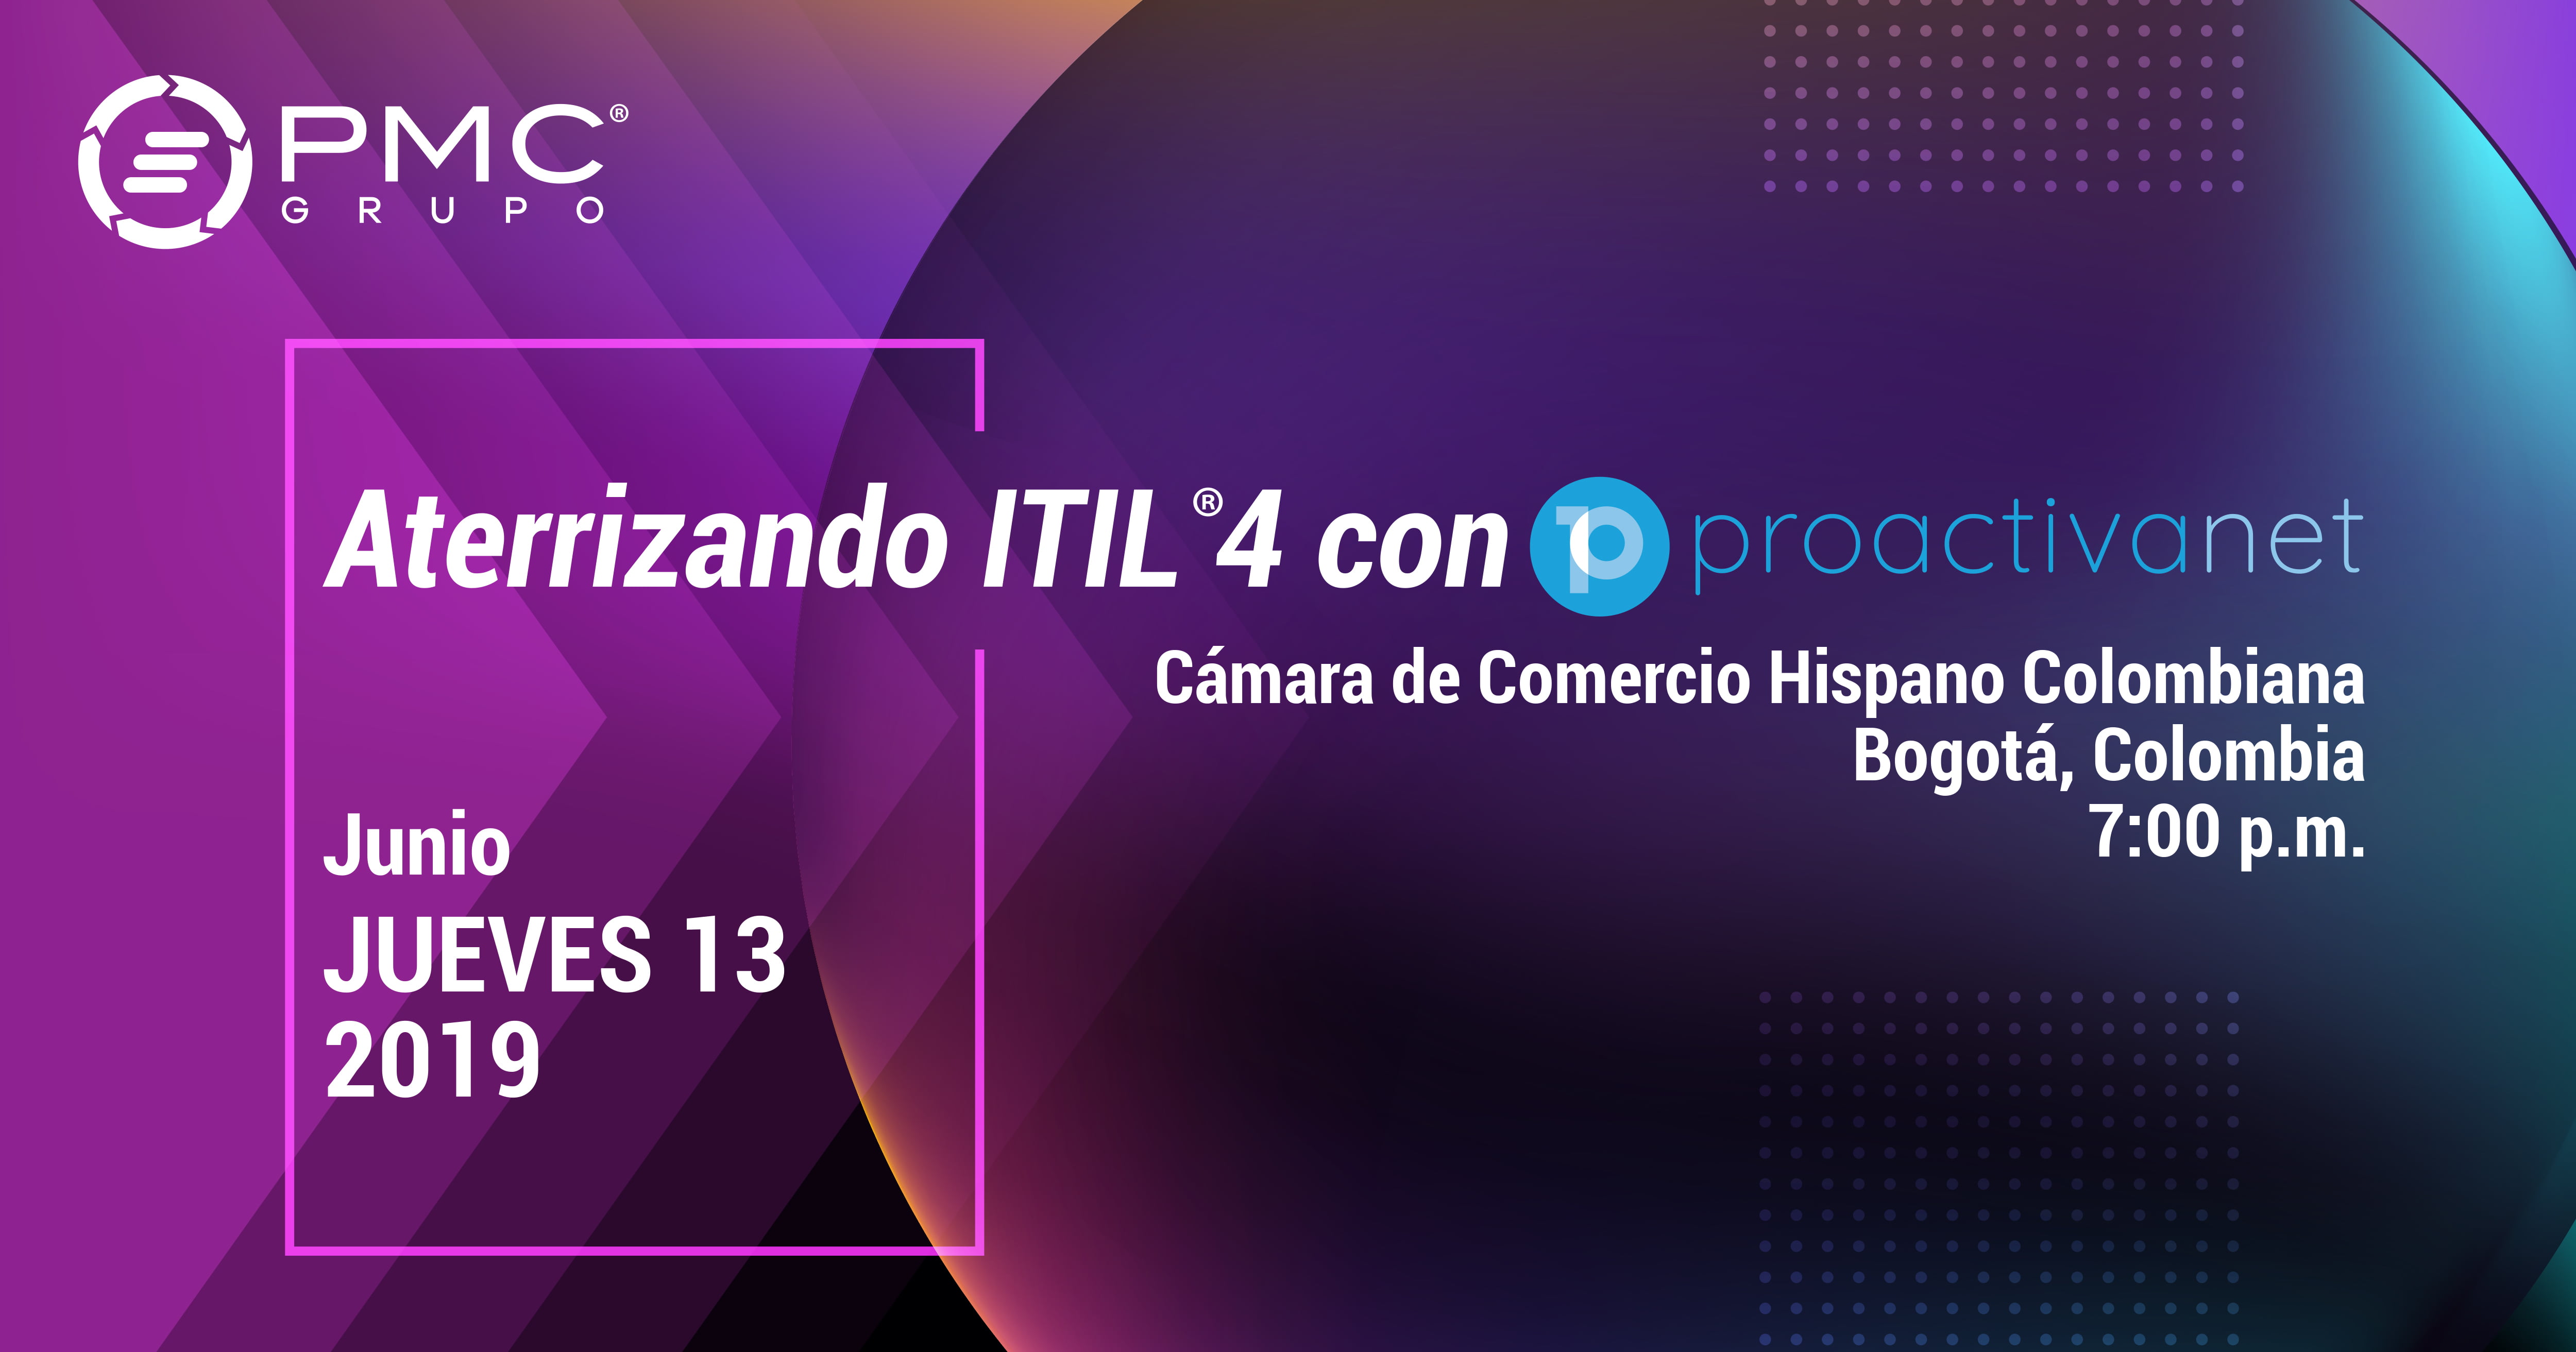 Aterrizando ITIL 4 con Proactivanet - Evento en Bogotá